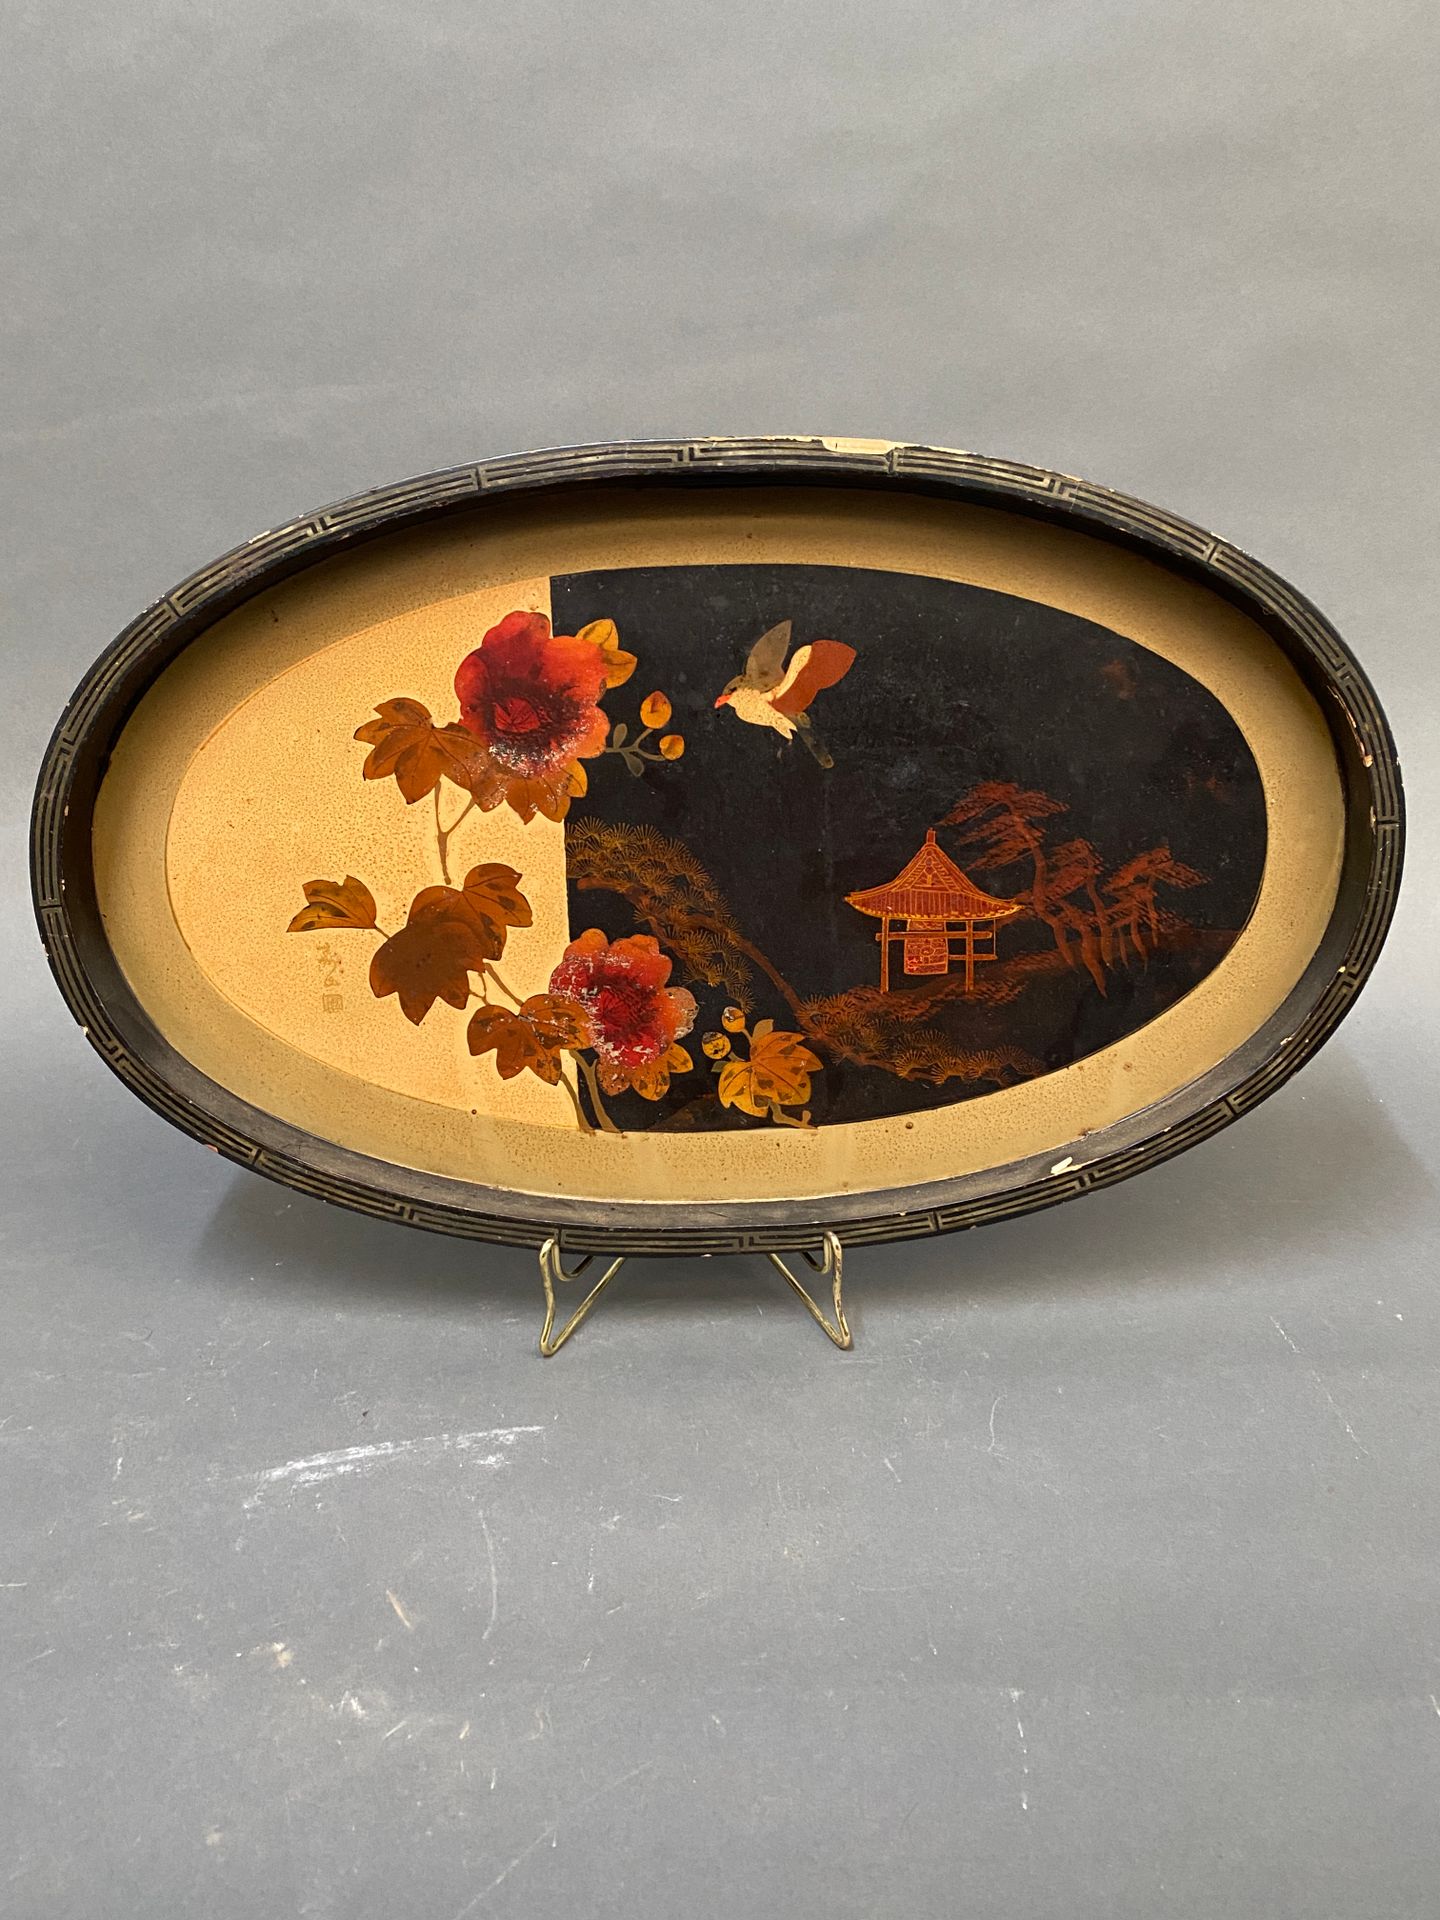 Null 椭圆形的发黑和涂漆的木质托盘，装饰有亚洲景观。

左下方有签名。

1920年左右工作。

尺寸：27,5 x 45,5厘米（摩擦）。